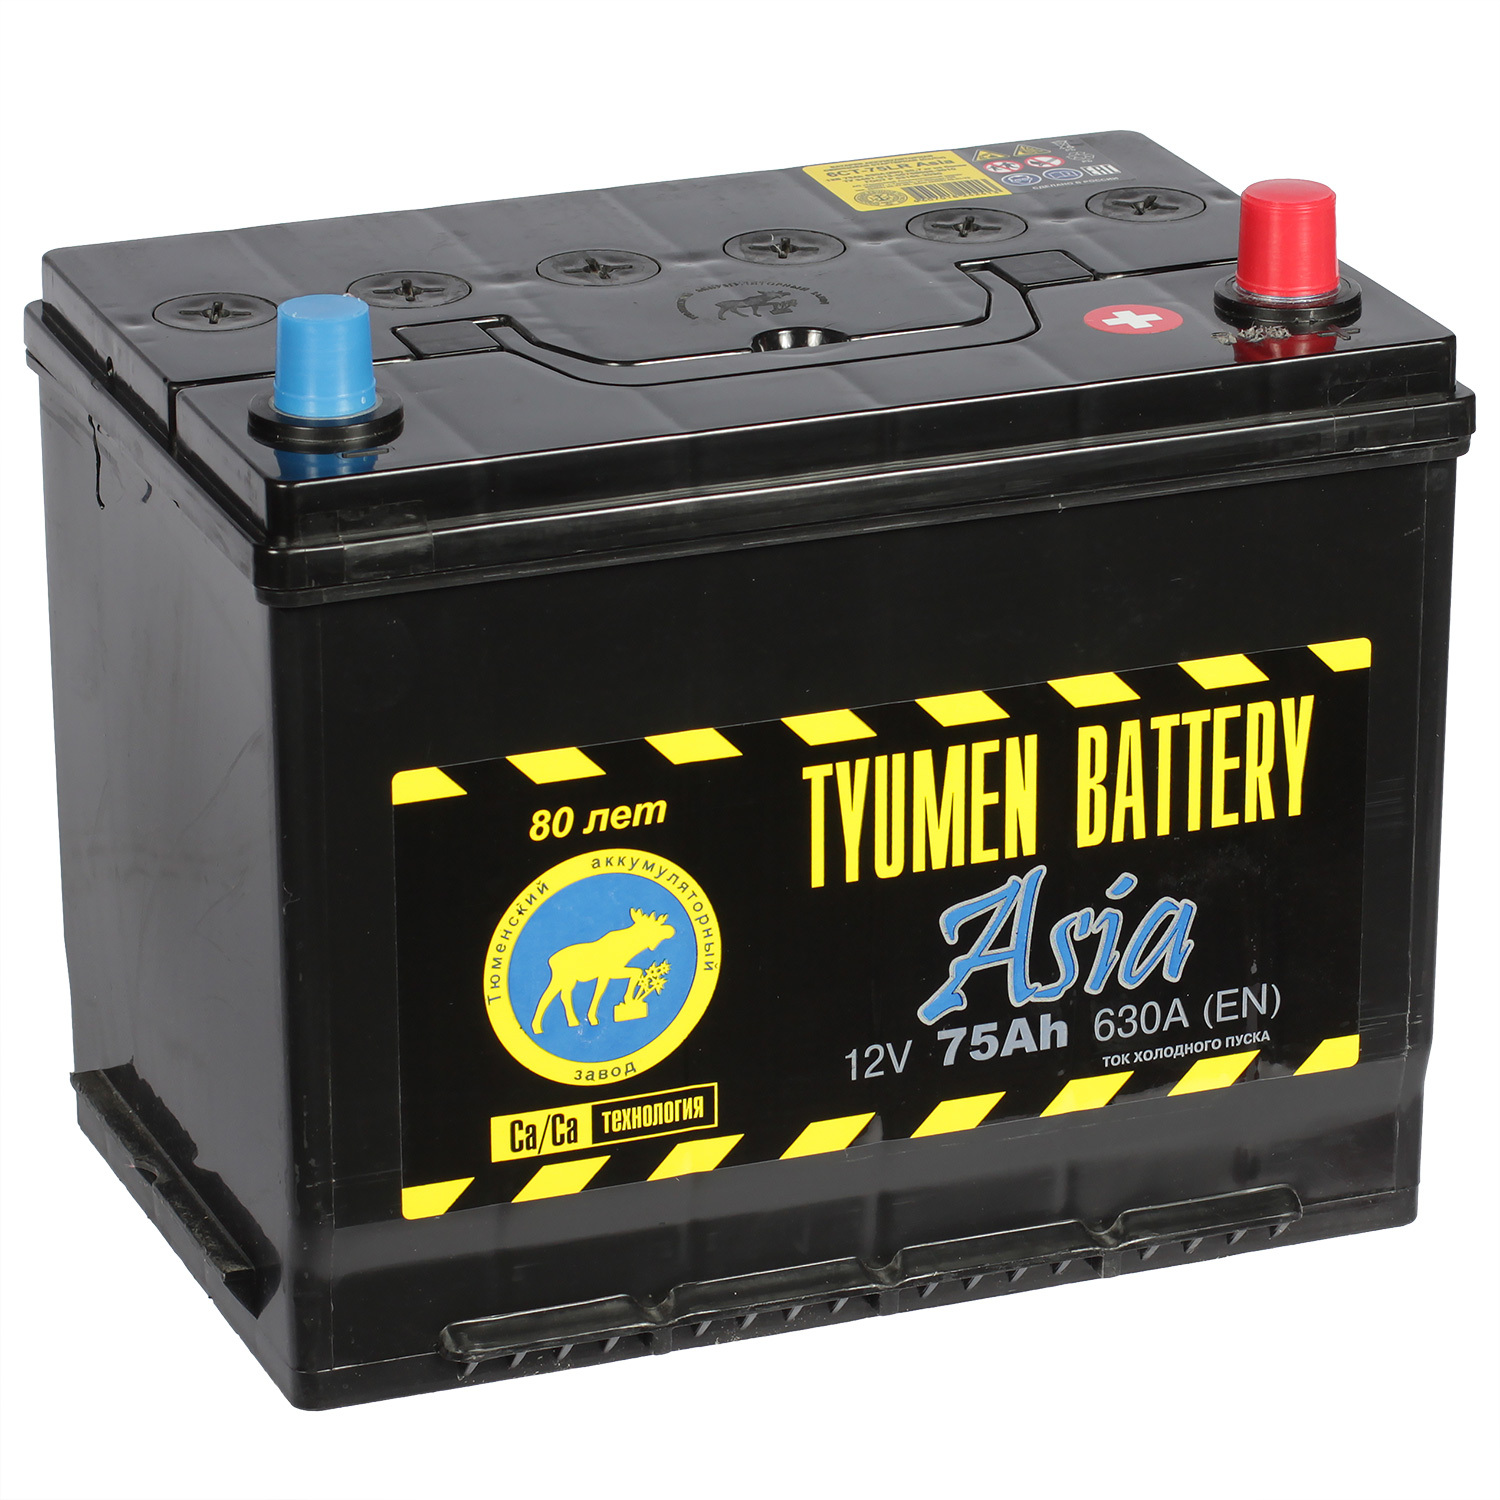 Tyumen Battery Автомобильный аккумулятор Tyumen Battery Asia 75 Ач обратная полярность D26L